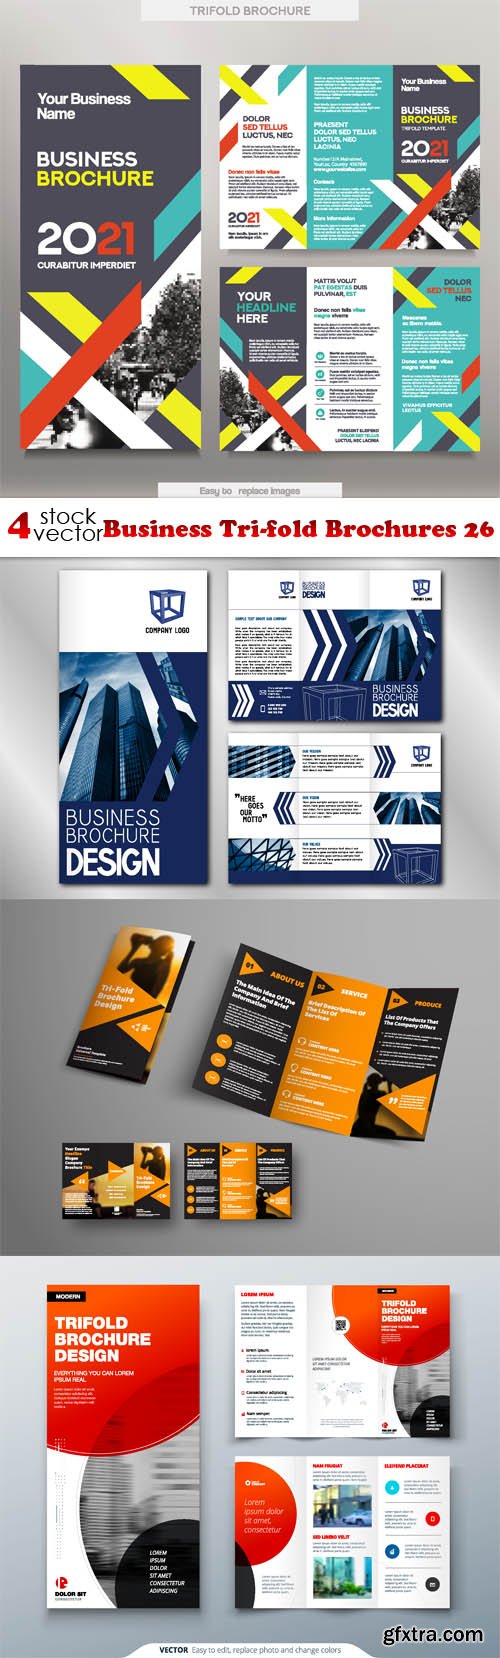 Vectors - Business Tri-fold Brochures 26